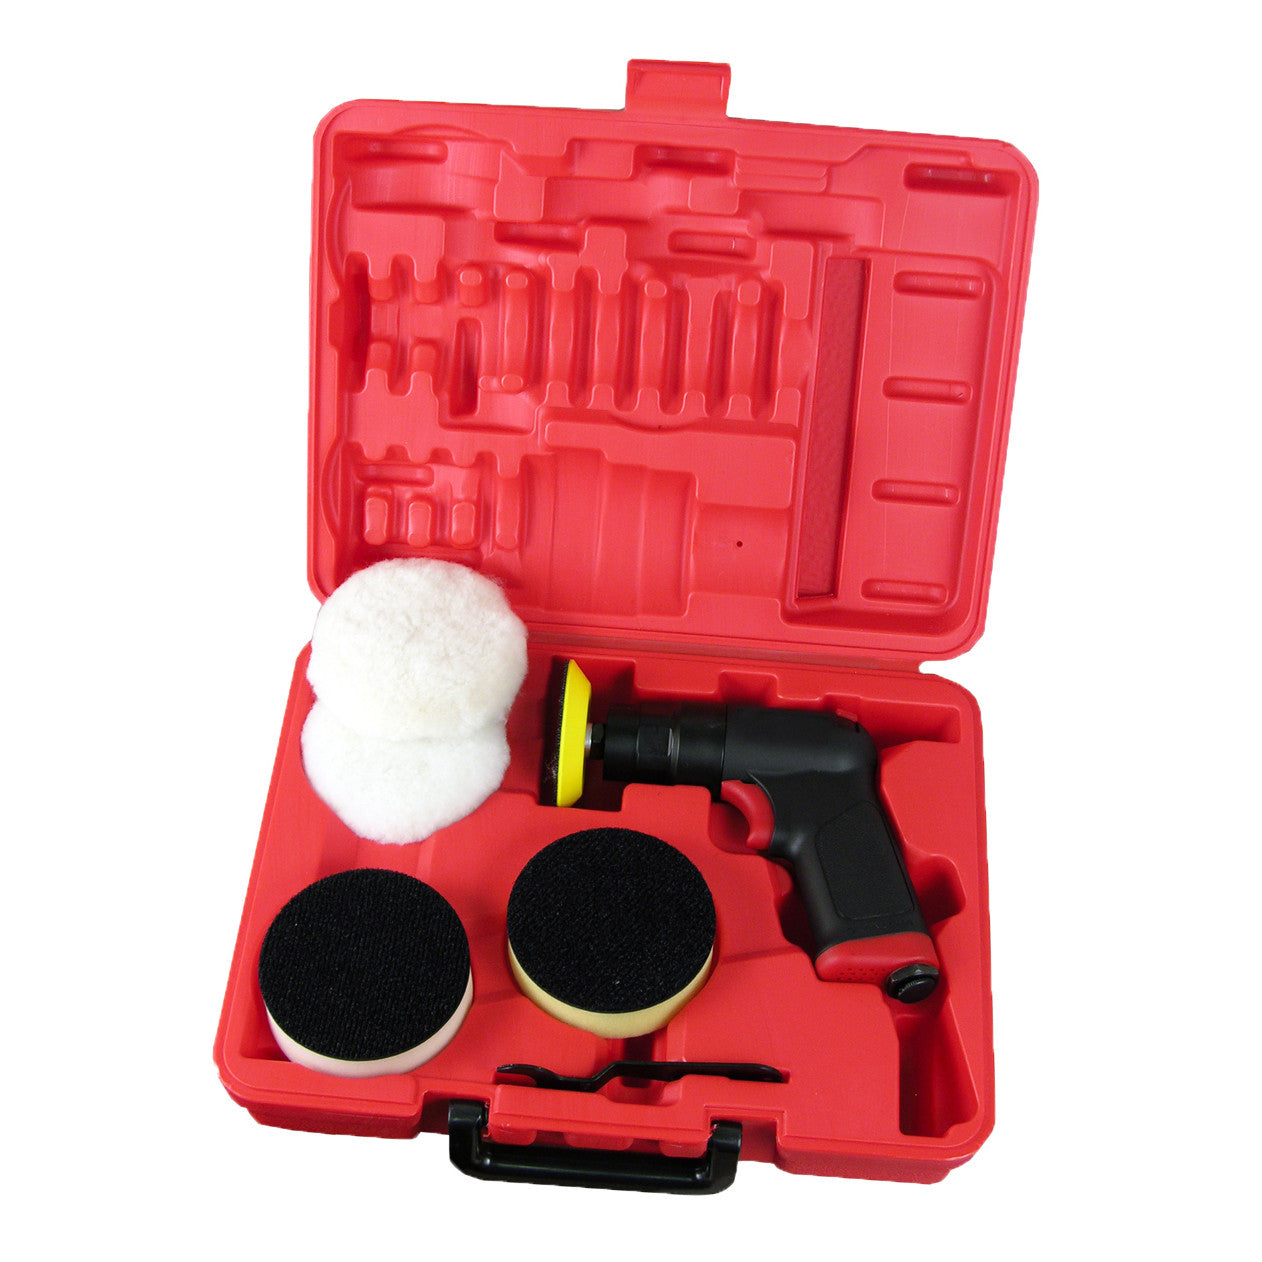 TGR 3 Car Buffing & Polishing Pad Kit - Turn Your Drill into Power Po –  Tool Guy Republic